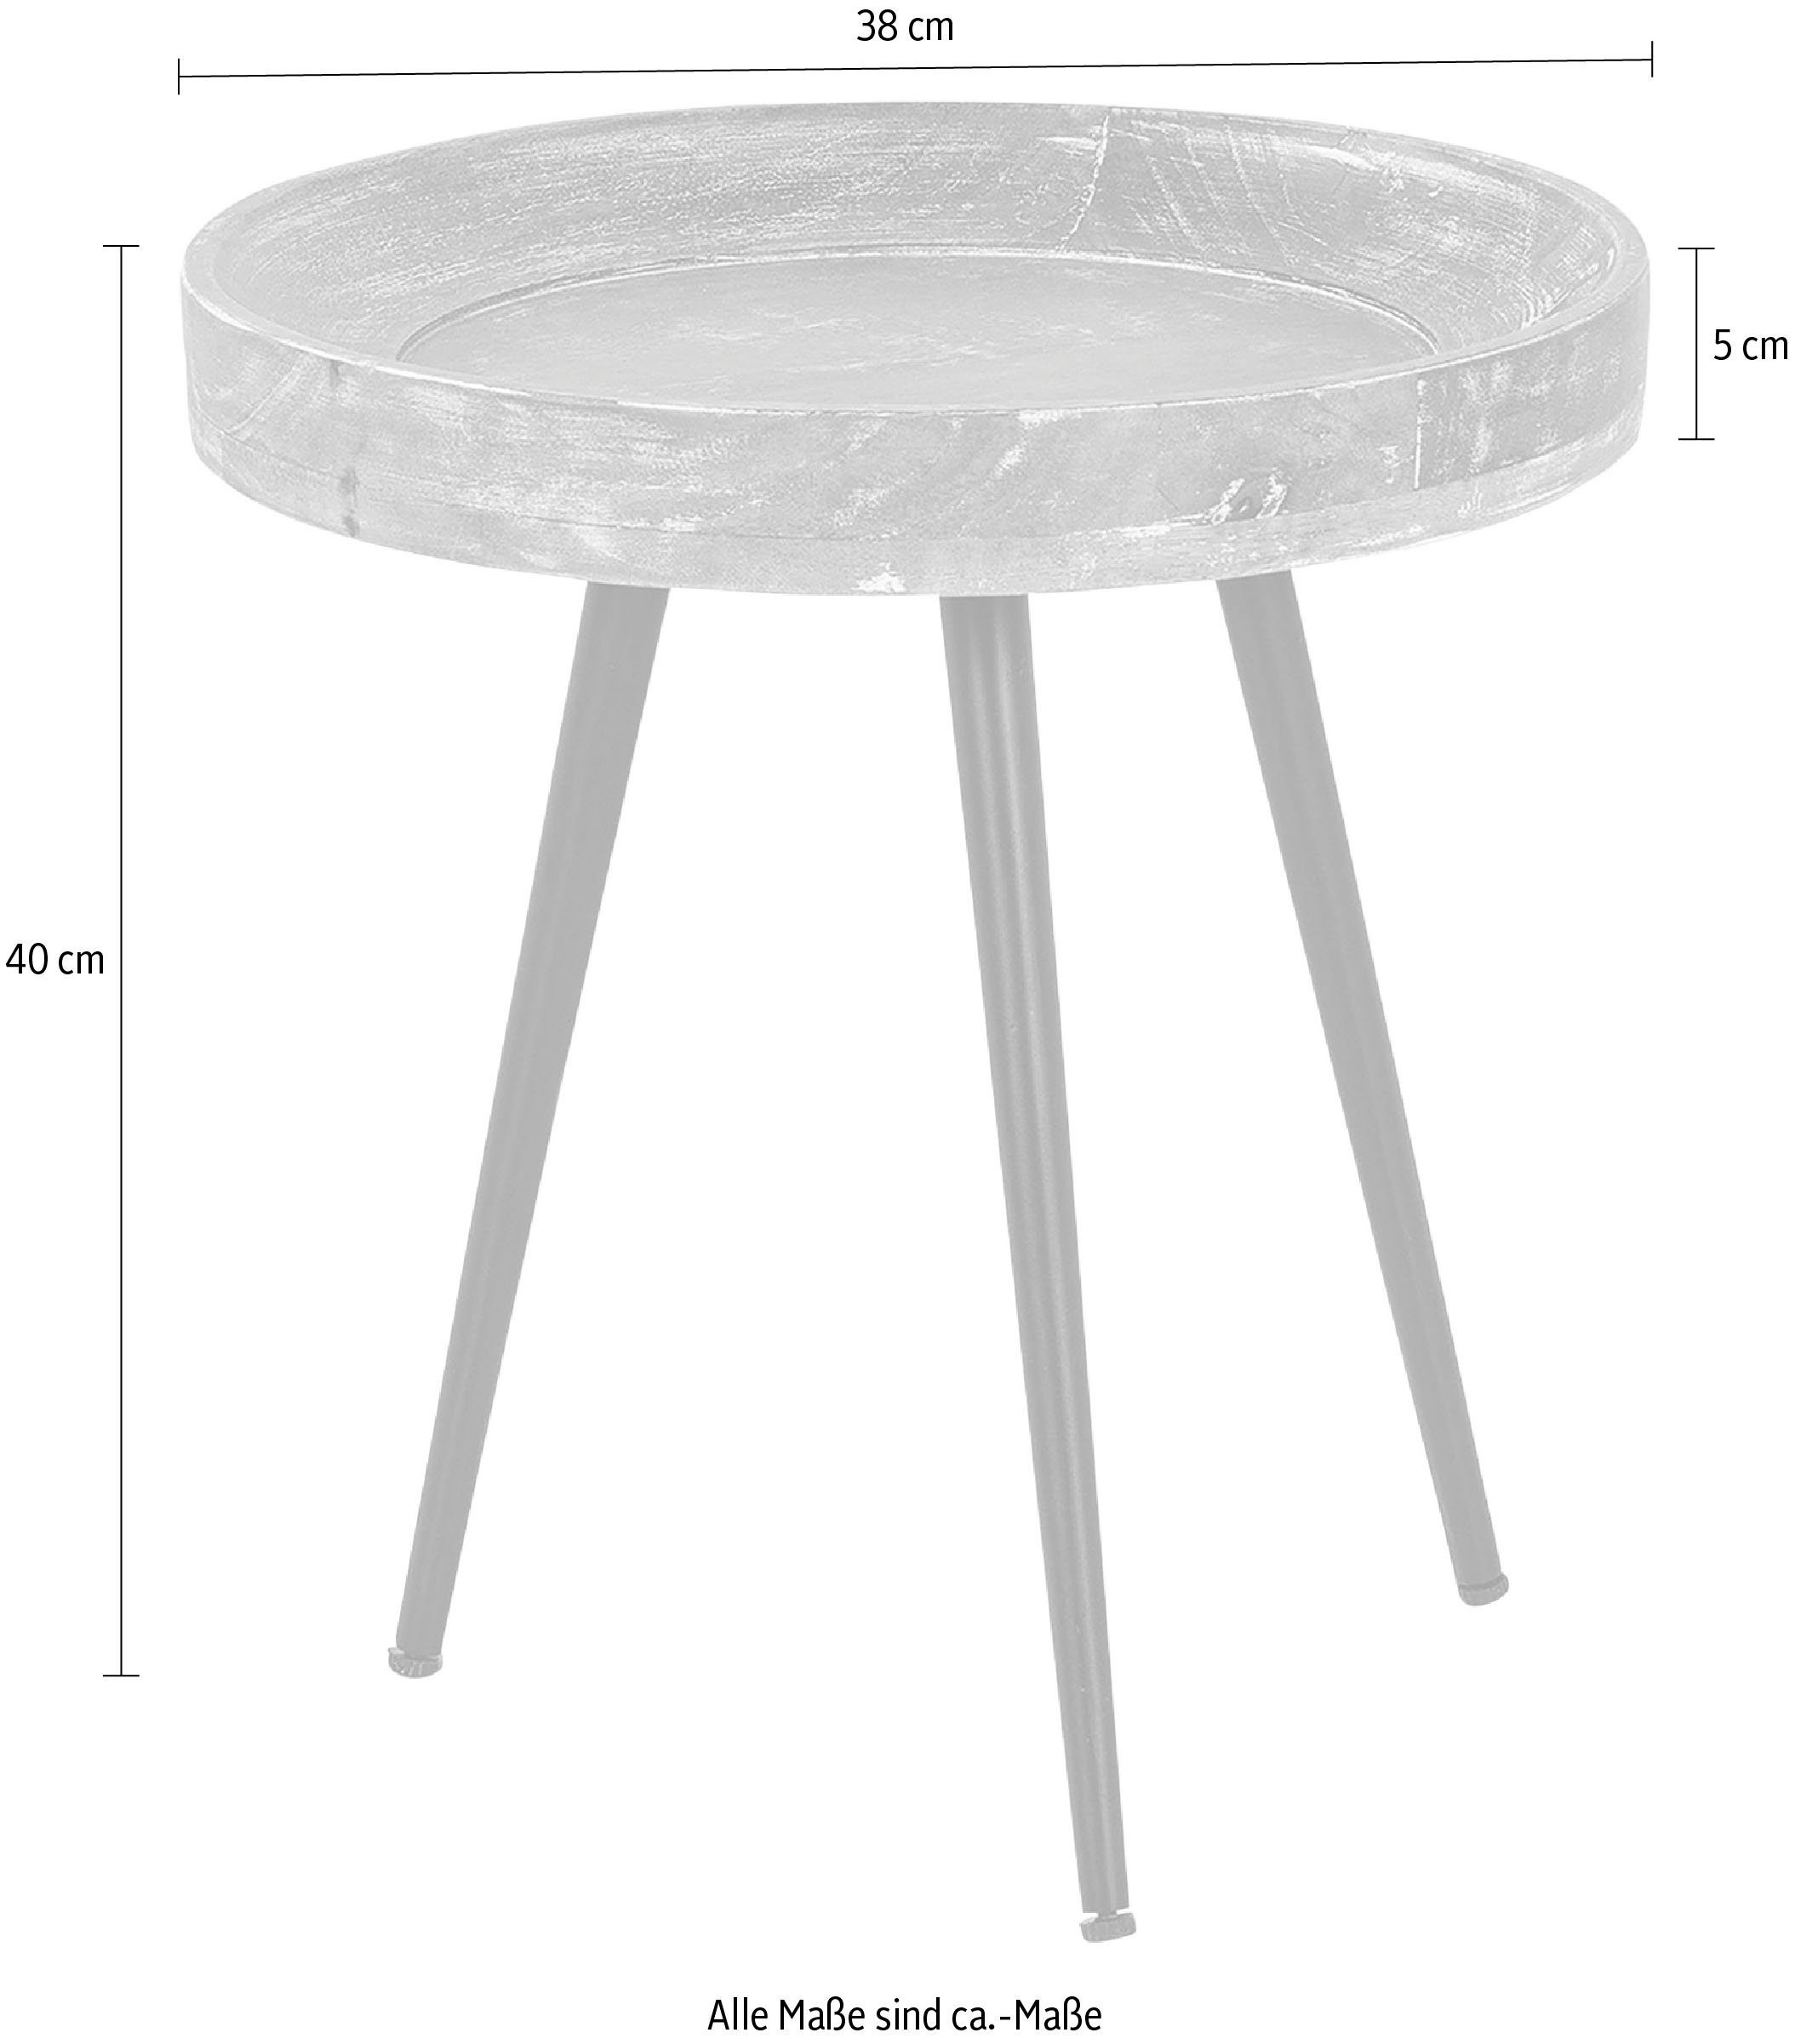 Ava, 38 runde cm oder Massive Durchmesser Tischplatte, byLIVING Beistelltisch 45